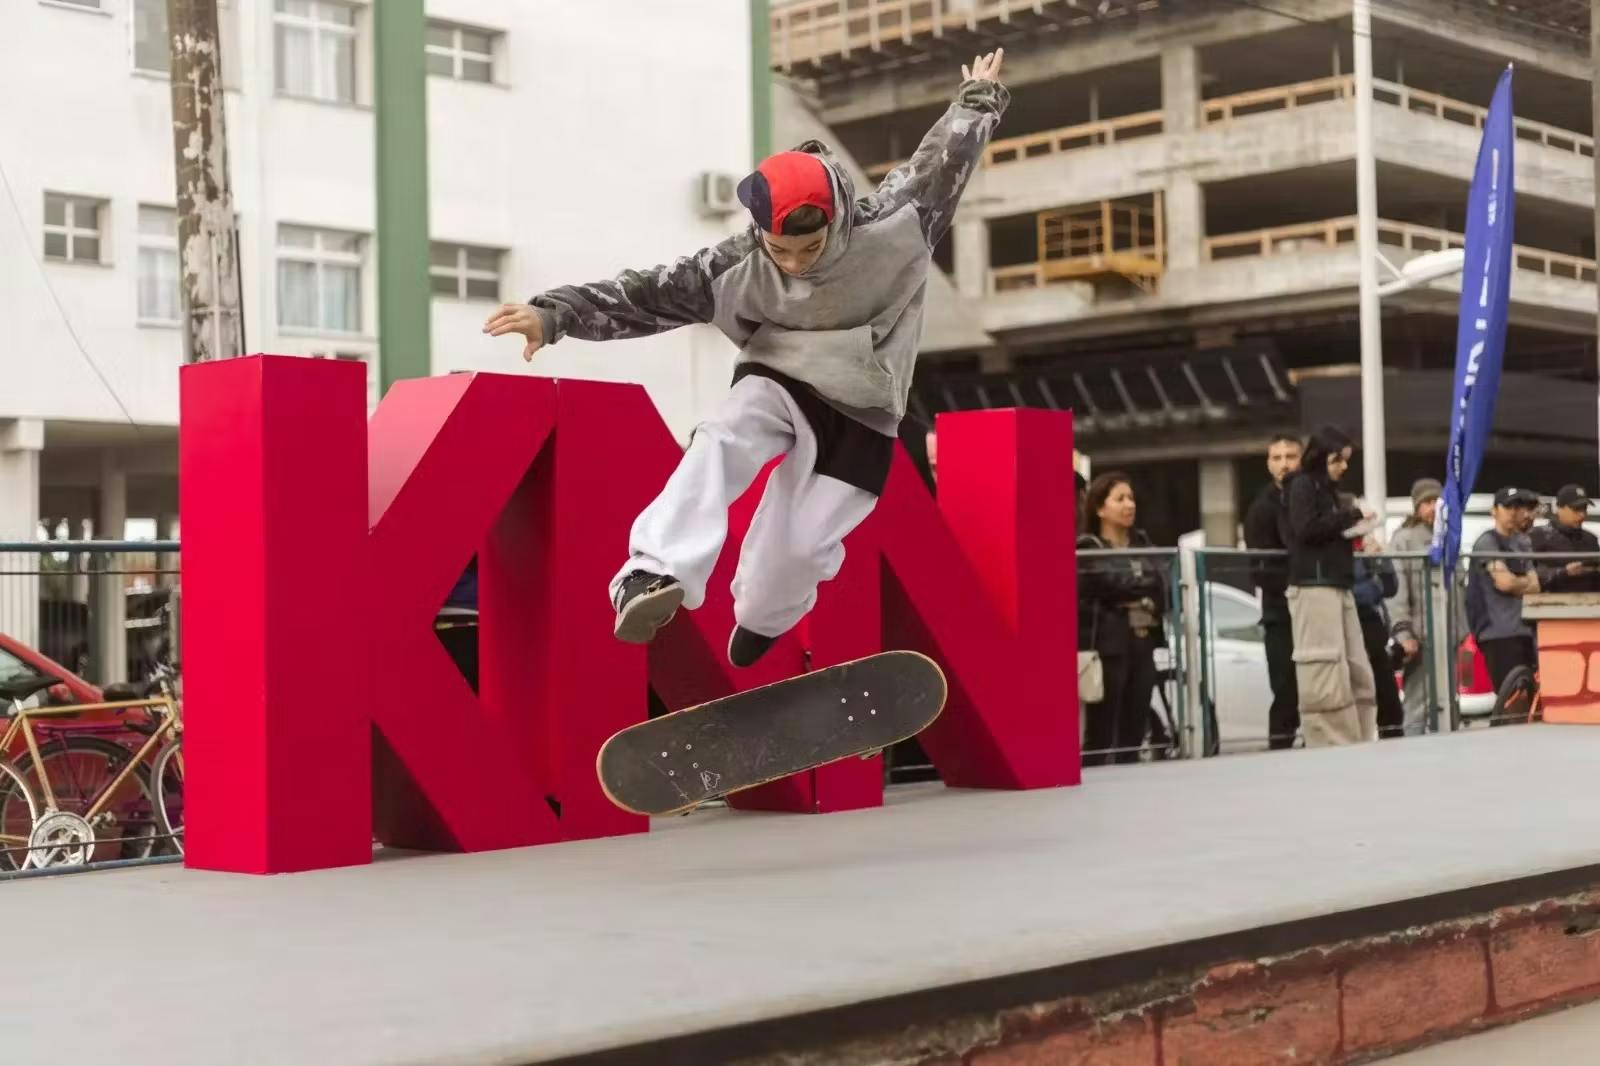 Homem fazendo uma manobra no skate em frente a logo da KNN